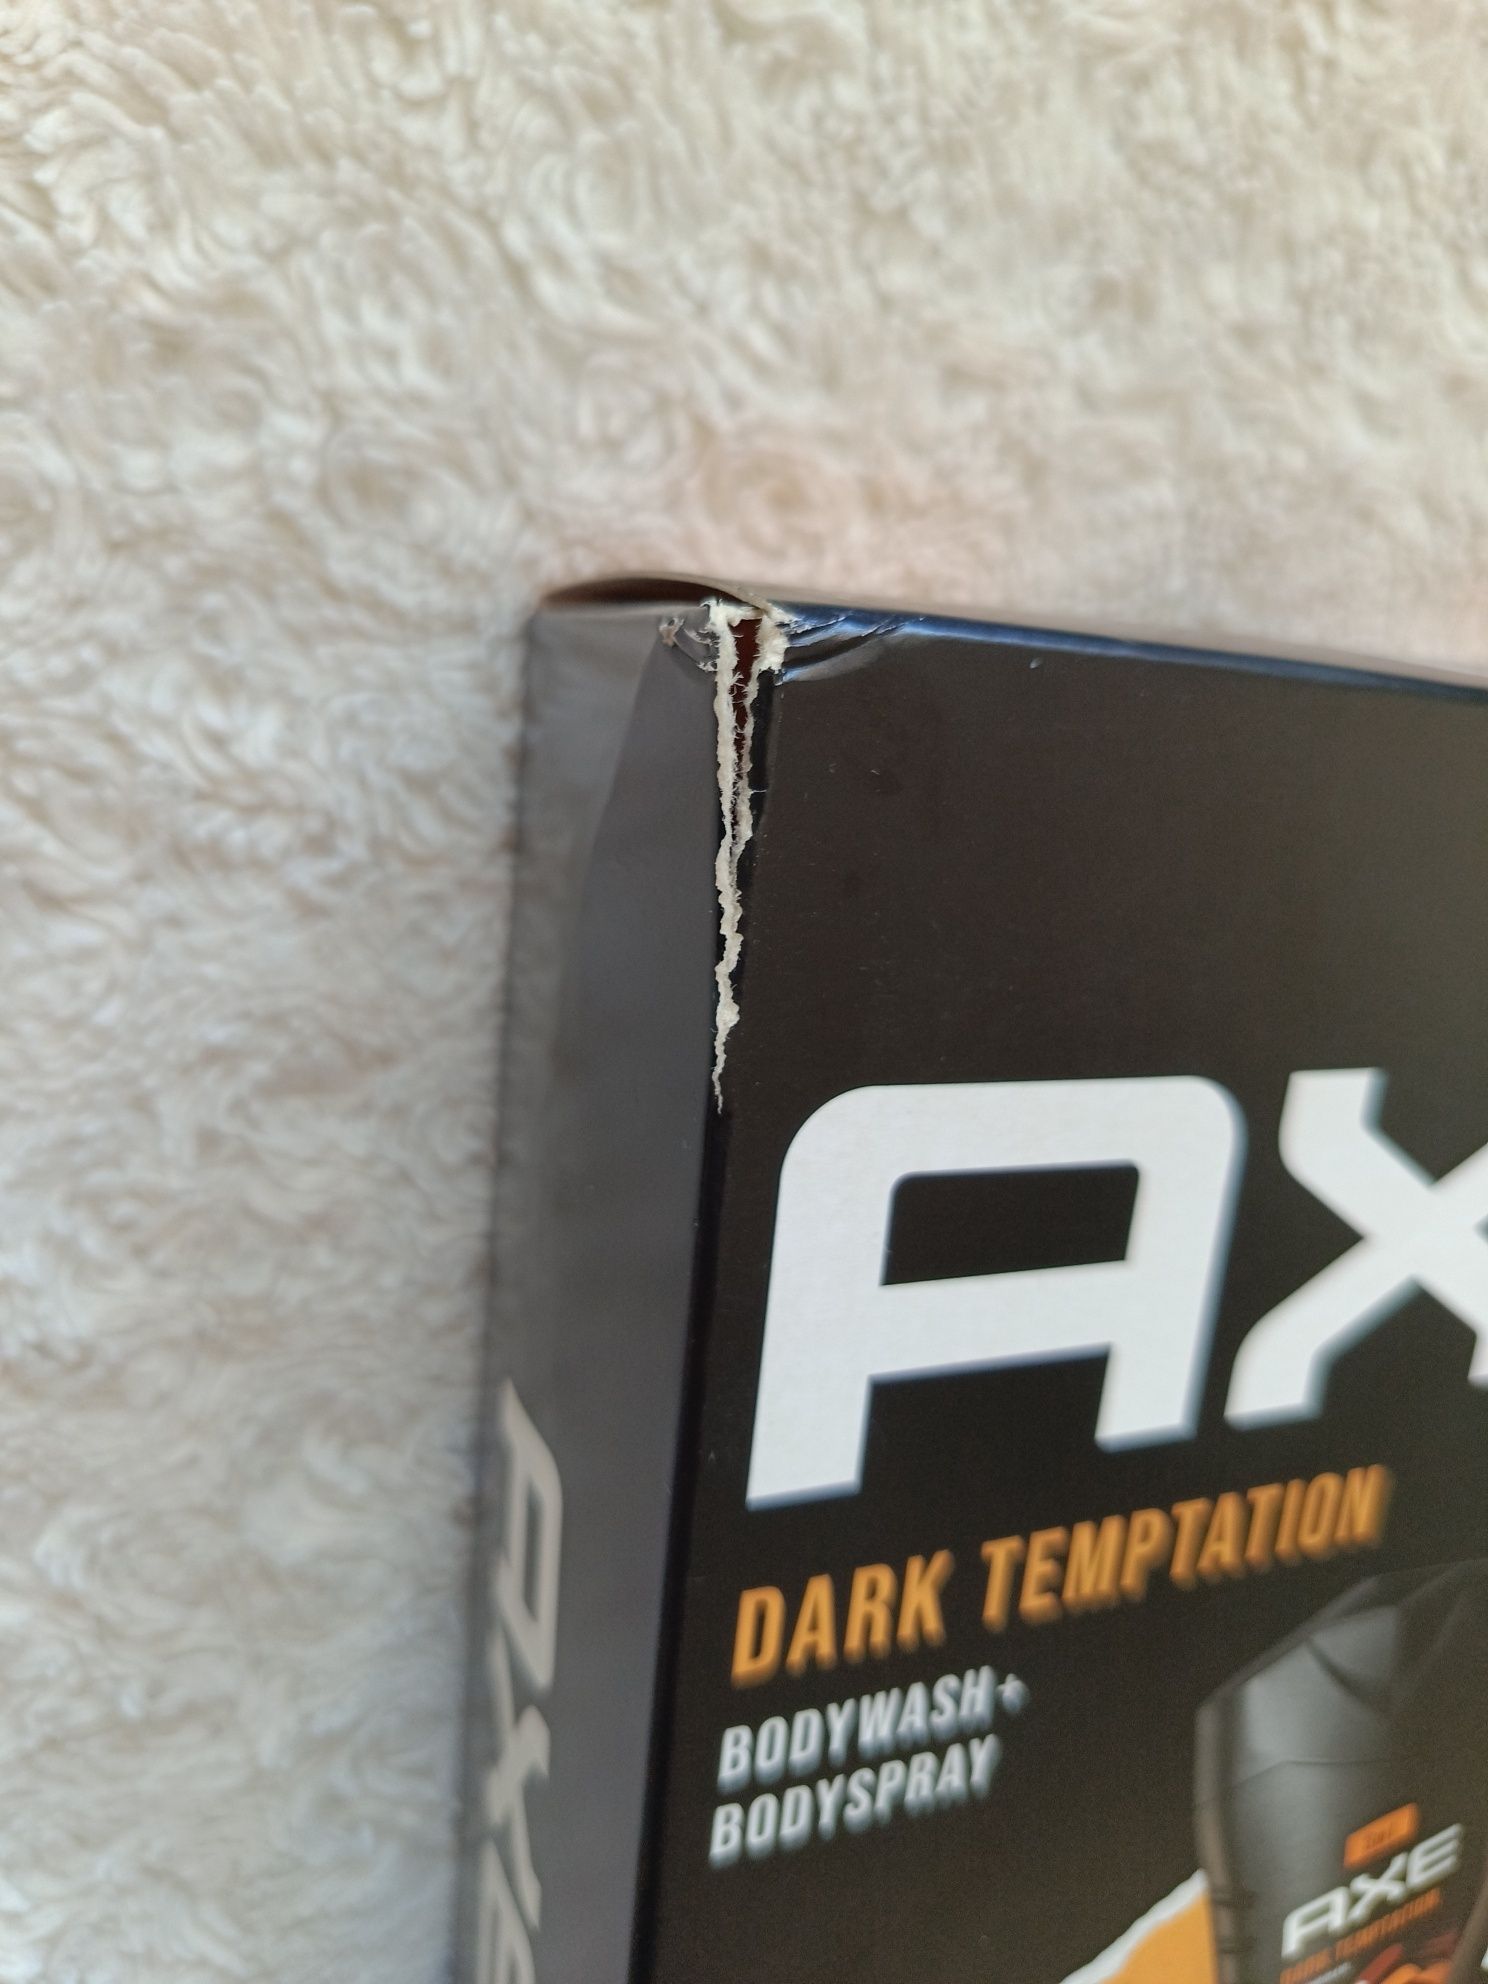 Zestaw kosmetyków AXE: dezodorant perfumowany męski, 150 ml + żel pod